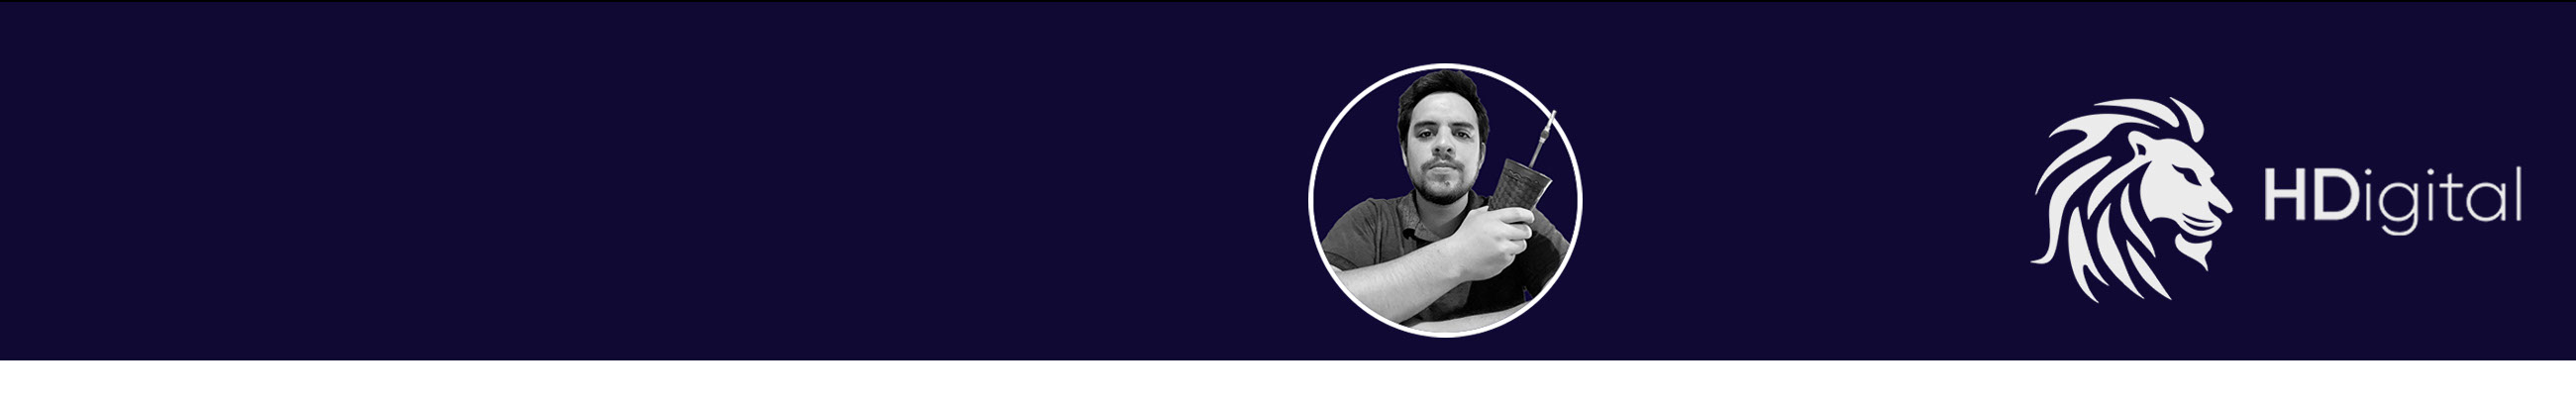 Profil-Banner von Hugo Duarte